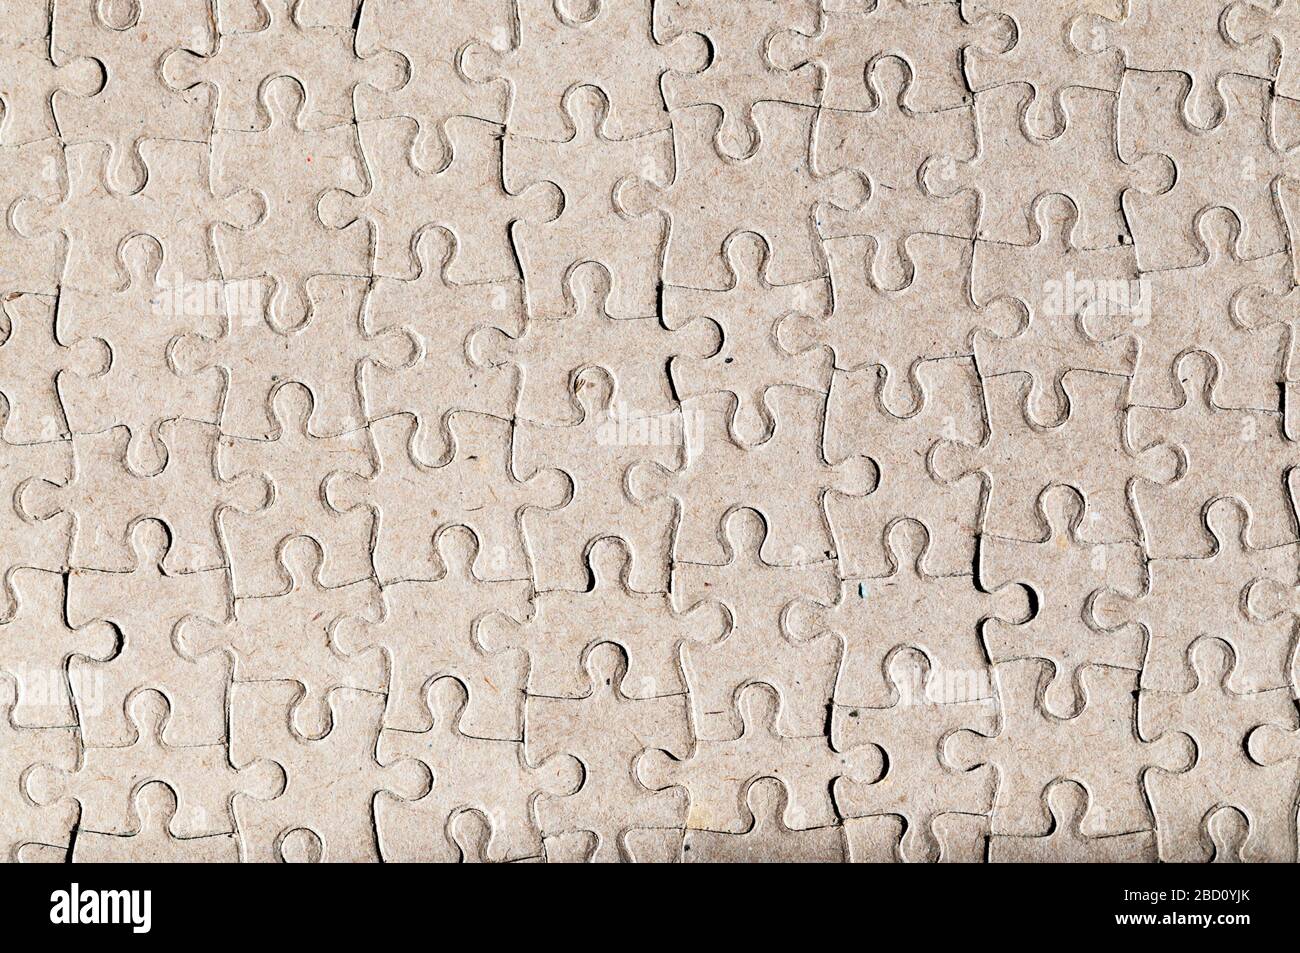 Arrière-plan abstrait formé par l'image du côté inverse vierge d'un puzzle complété. Banque D'Images